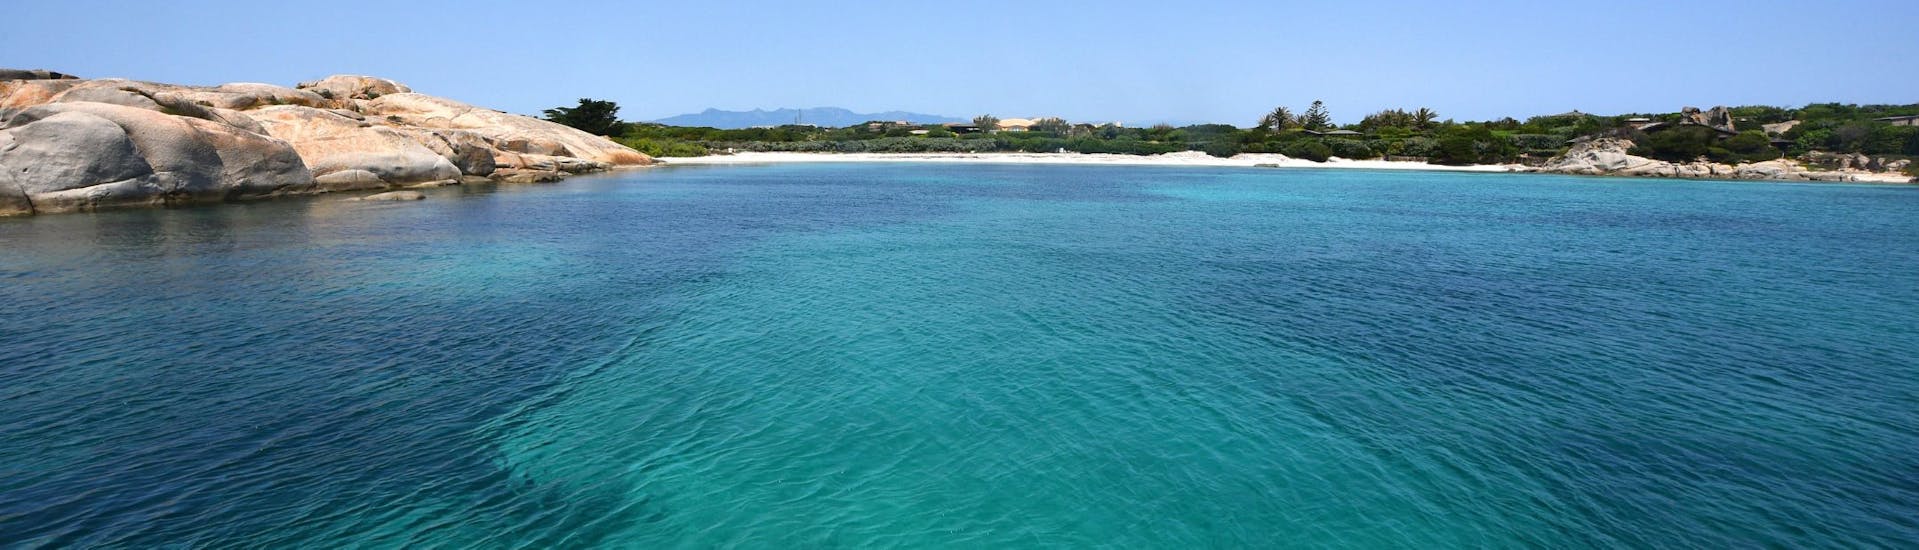 Calas de las islas Lavezzi durante la excursión en barco al atardecer desde Bonifacio al archipiélago de Lavezzi.